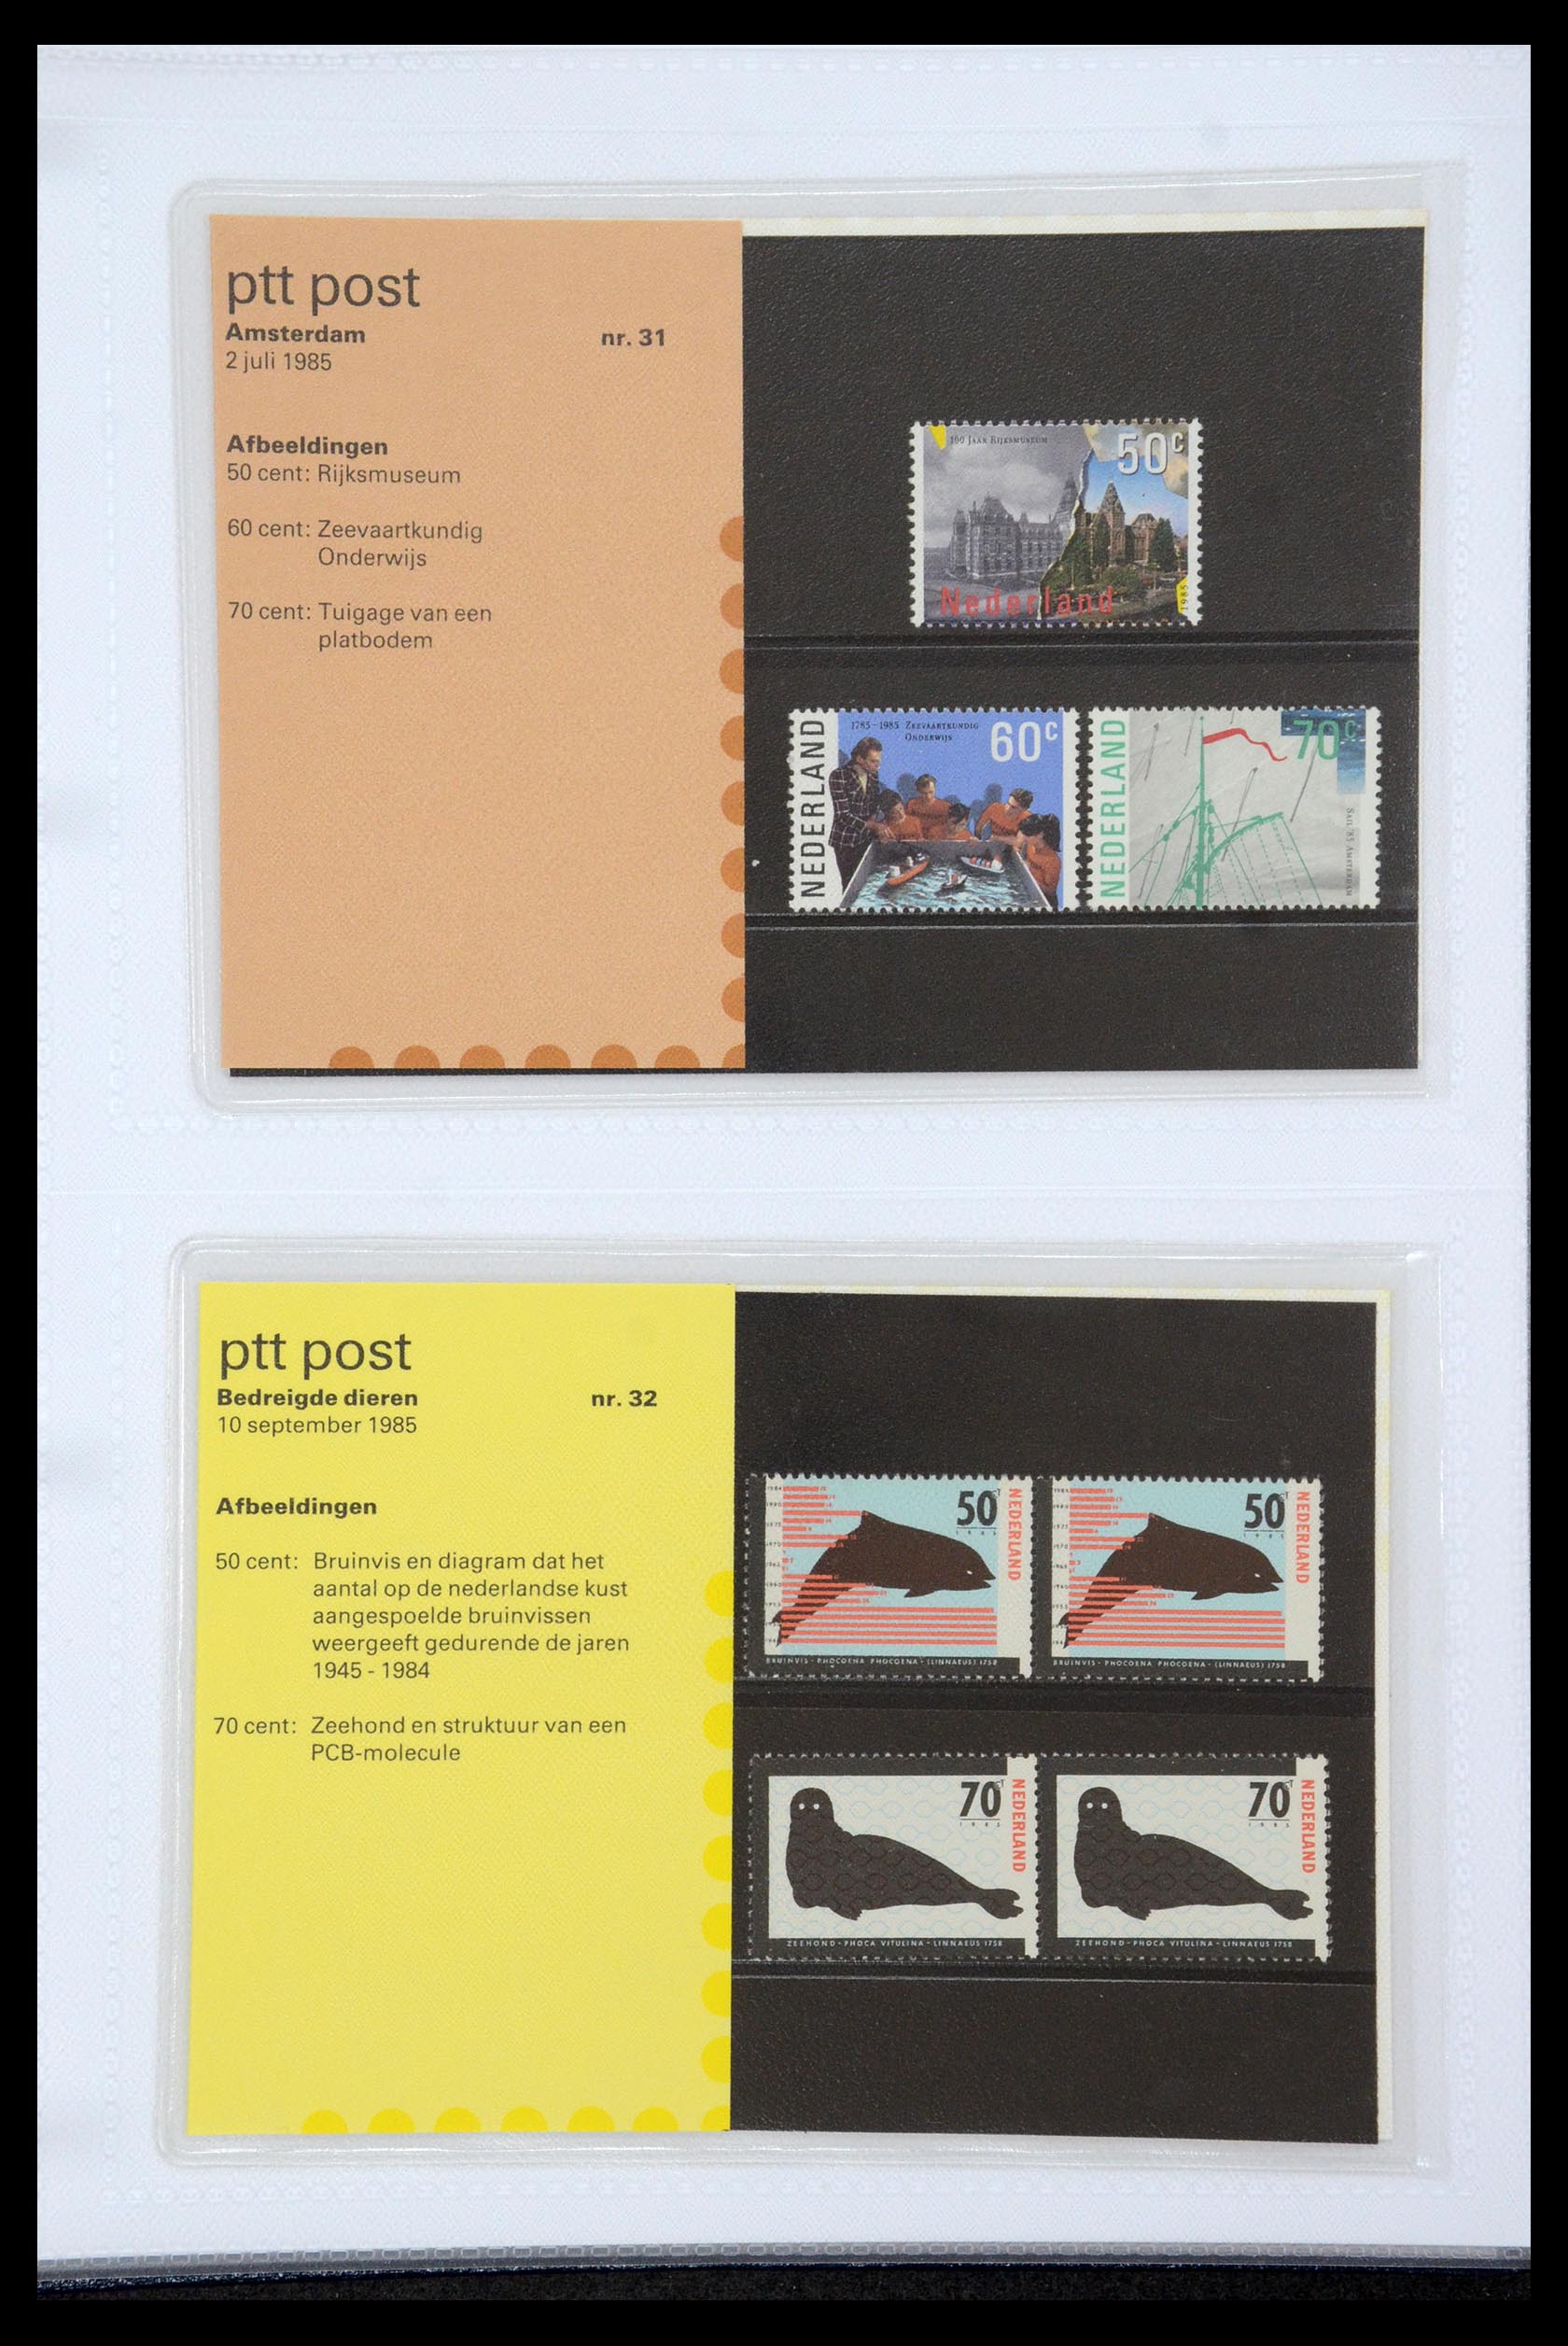 35947 016 - Stamp Collection 35947 Netherlands PTT presentation packs 1982-2019!